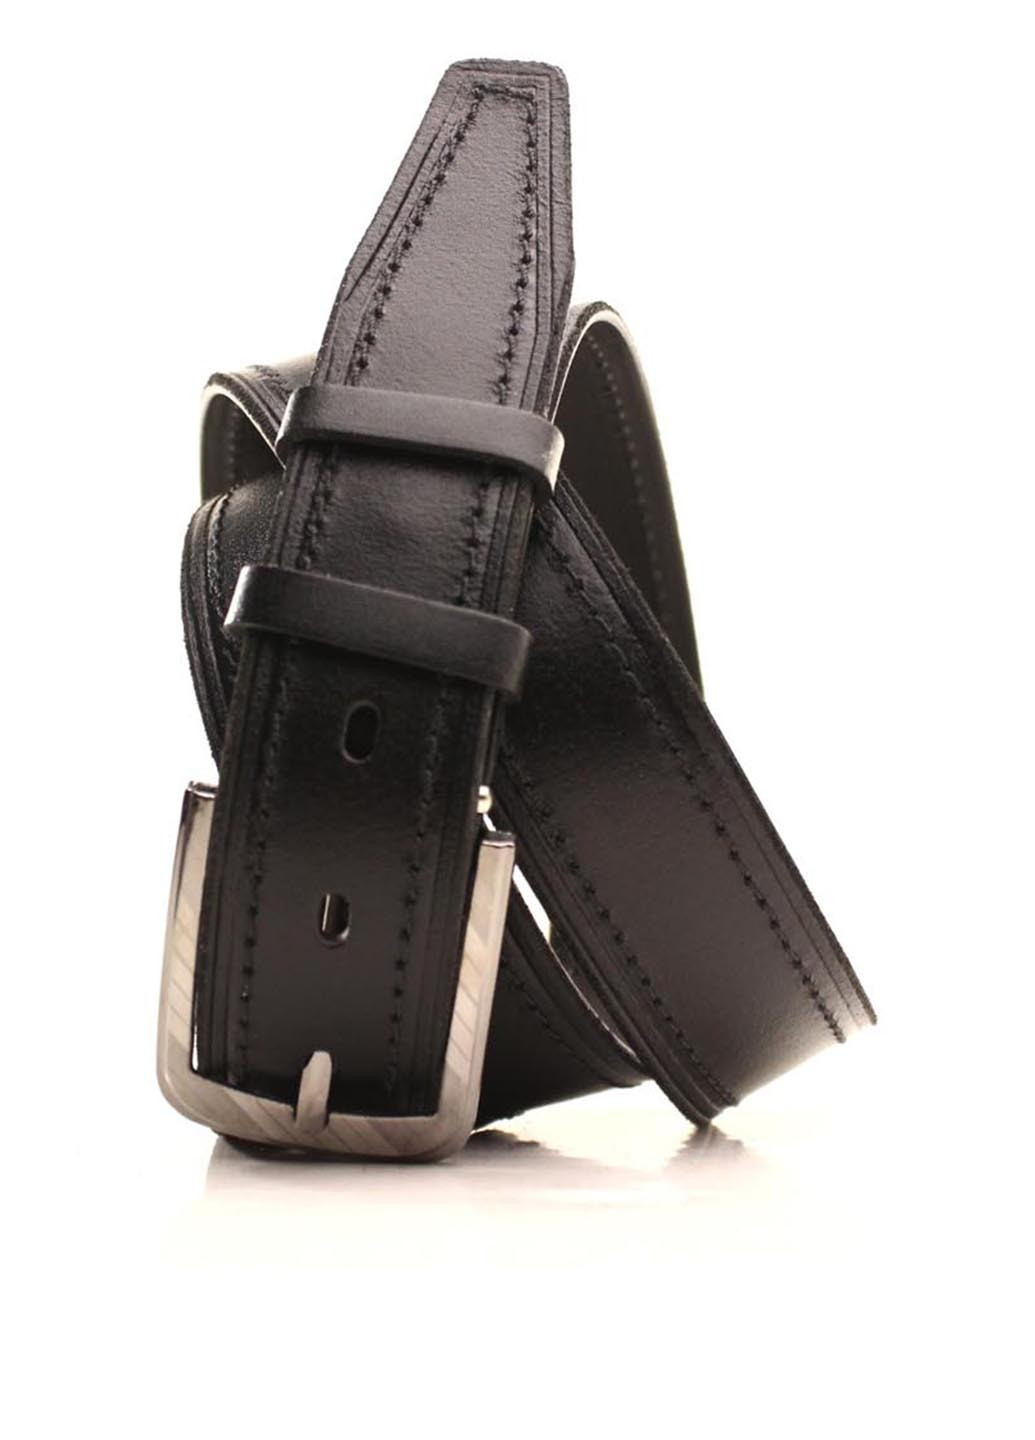 Ремень кожаный большого размера черный L35S1W24-1 140-150 см Lazar чёрный спилок